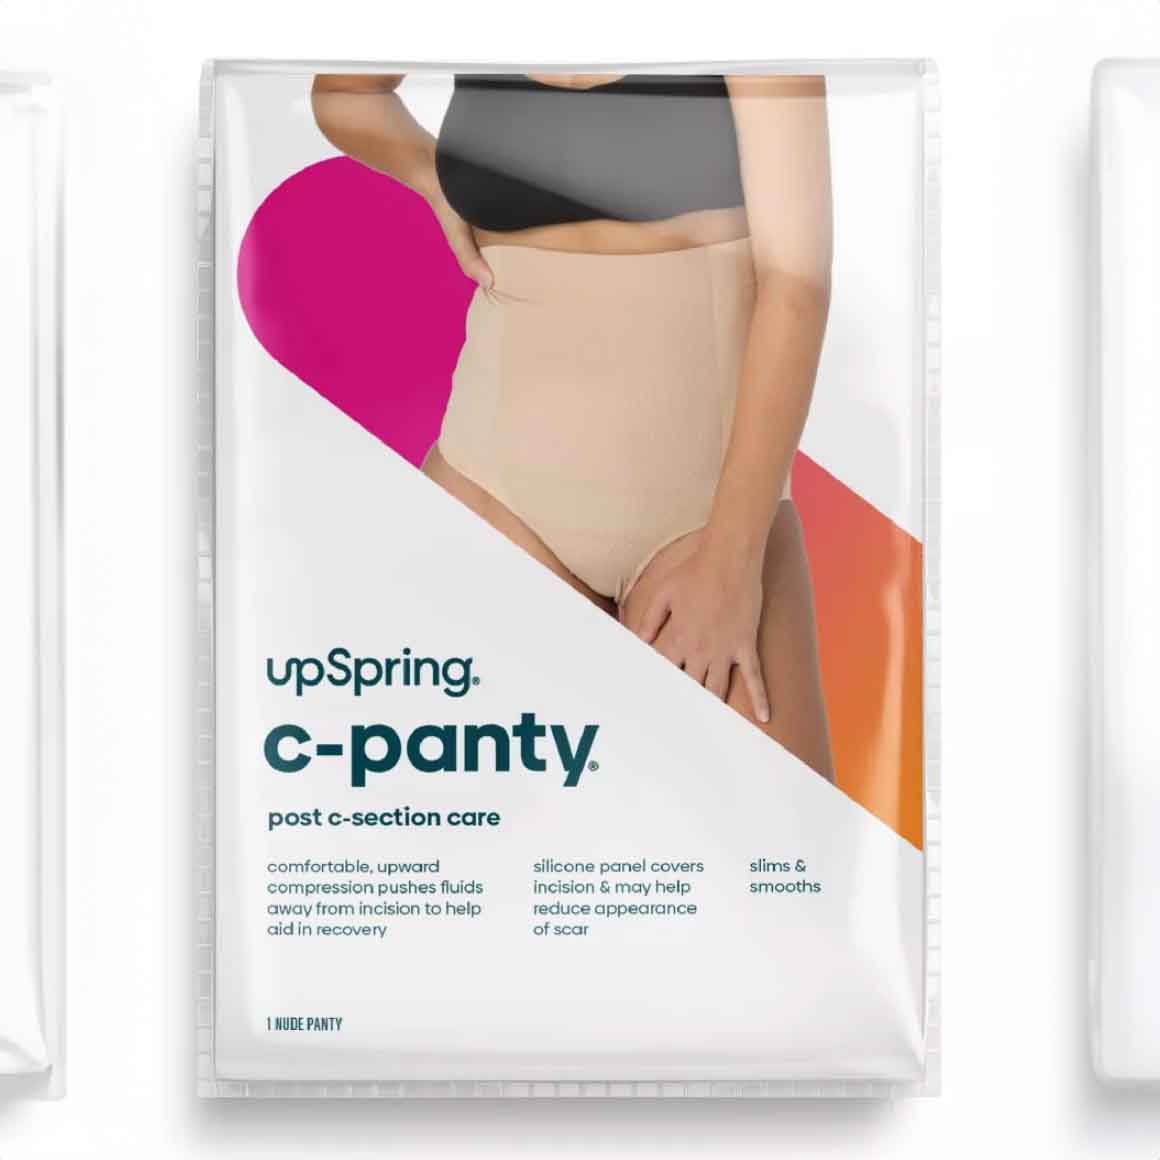 Upspring postpartum underwear in packaging